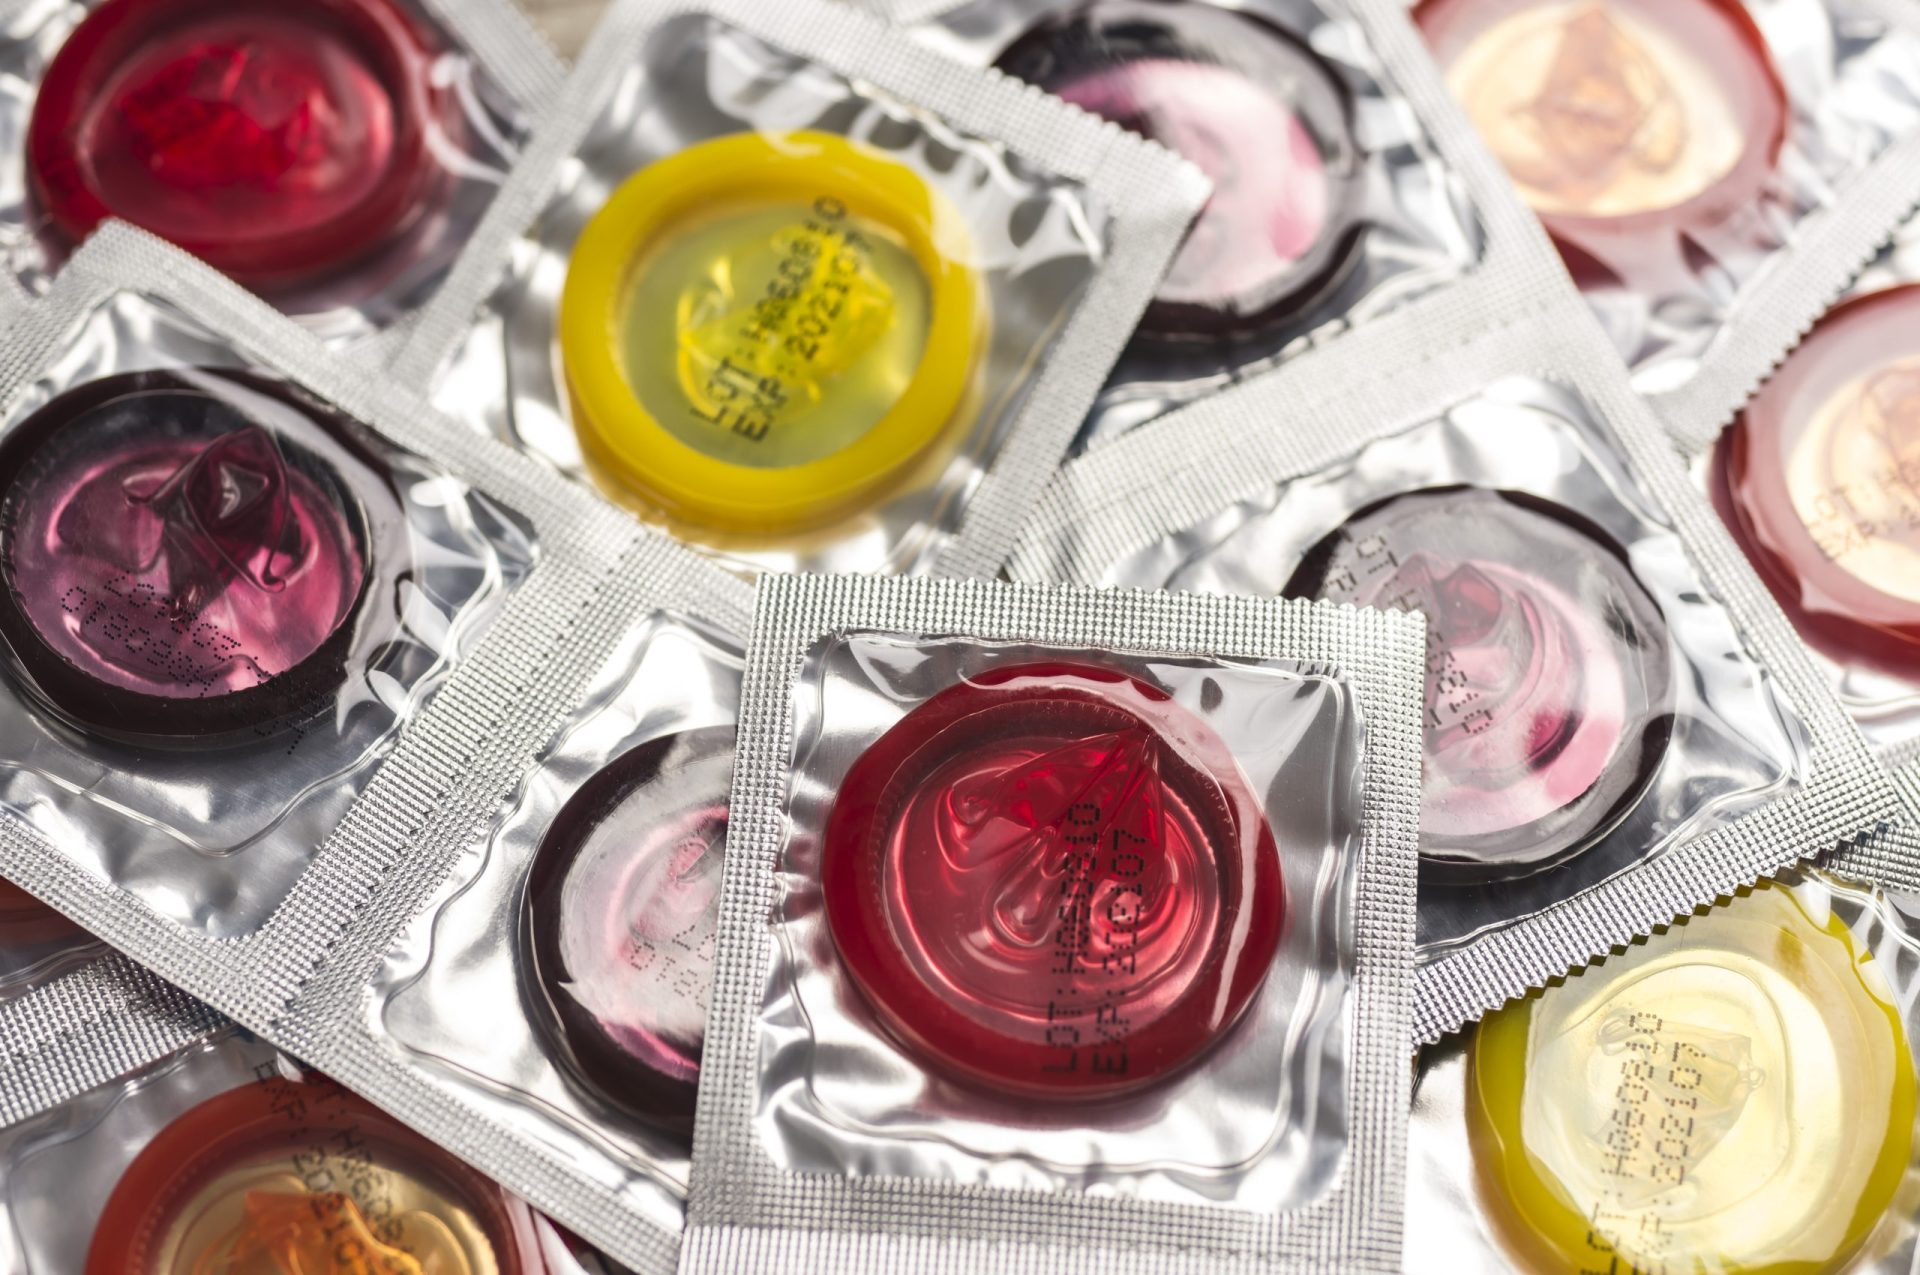 Metade dos jovens admite não usar preservativo com novos parceiros